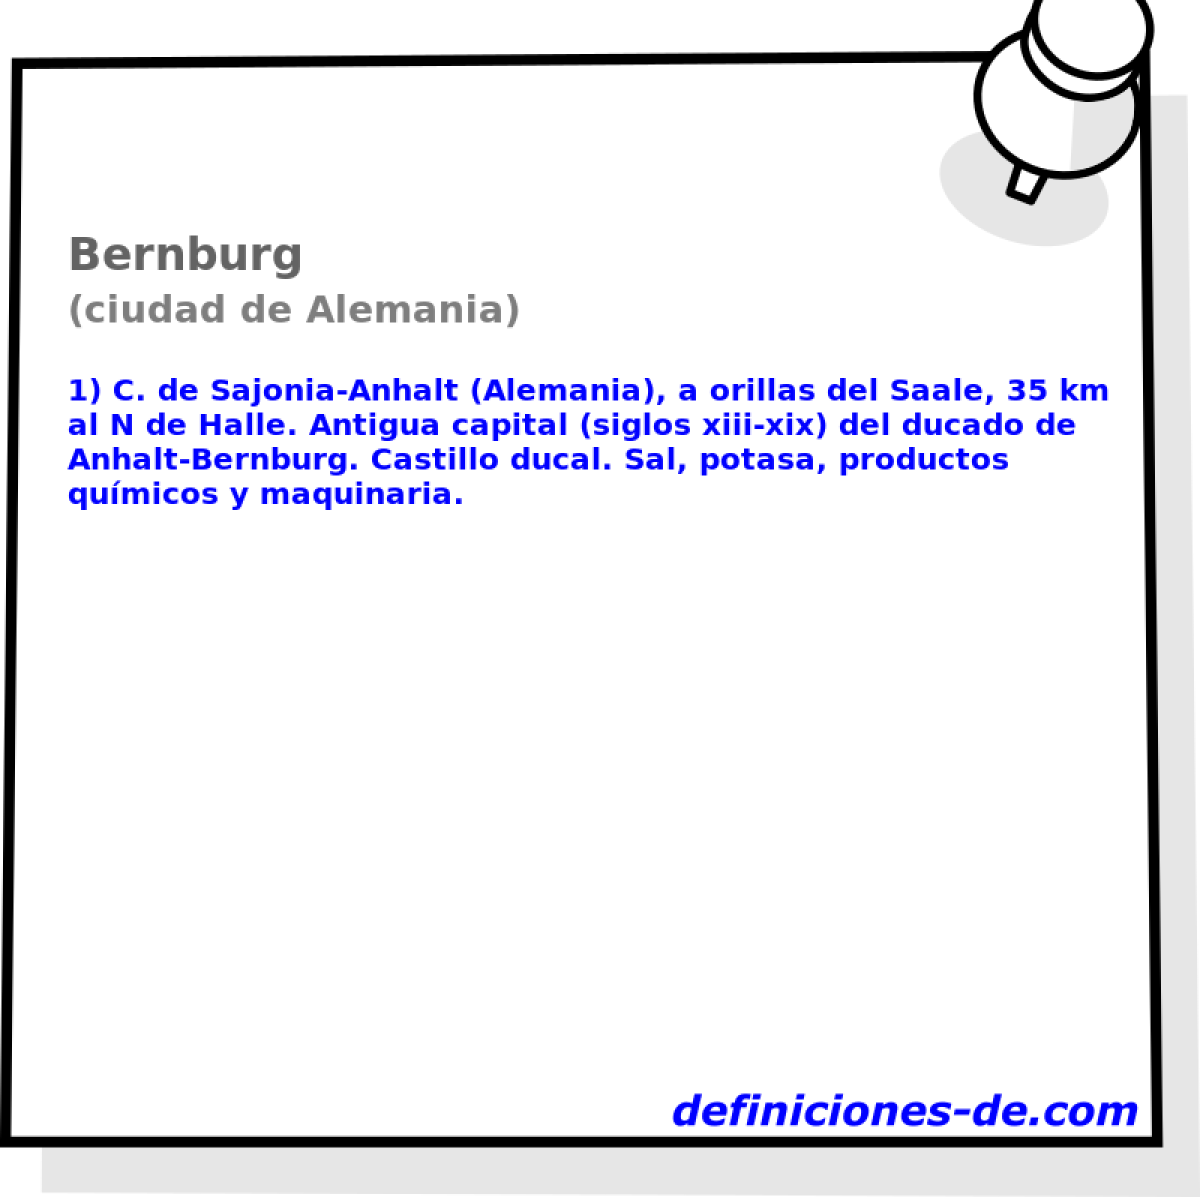 Bernburg (ciudad de Alemania)